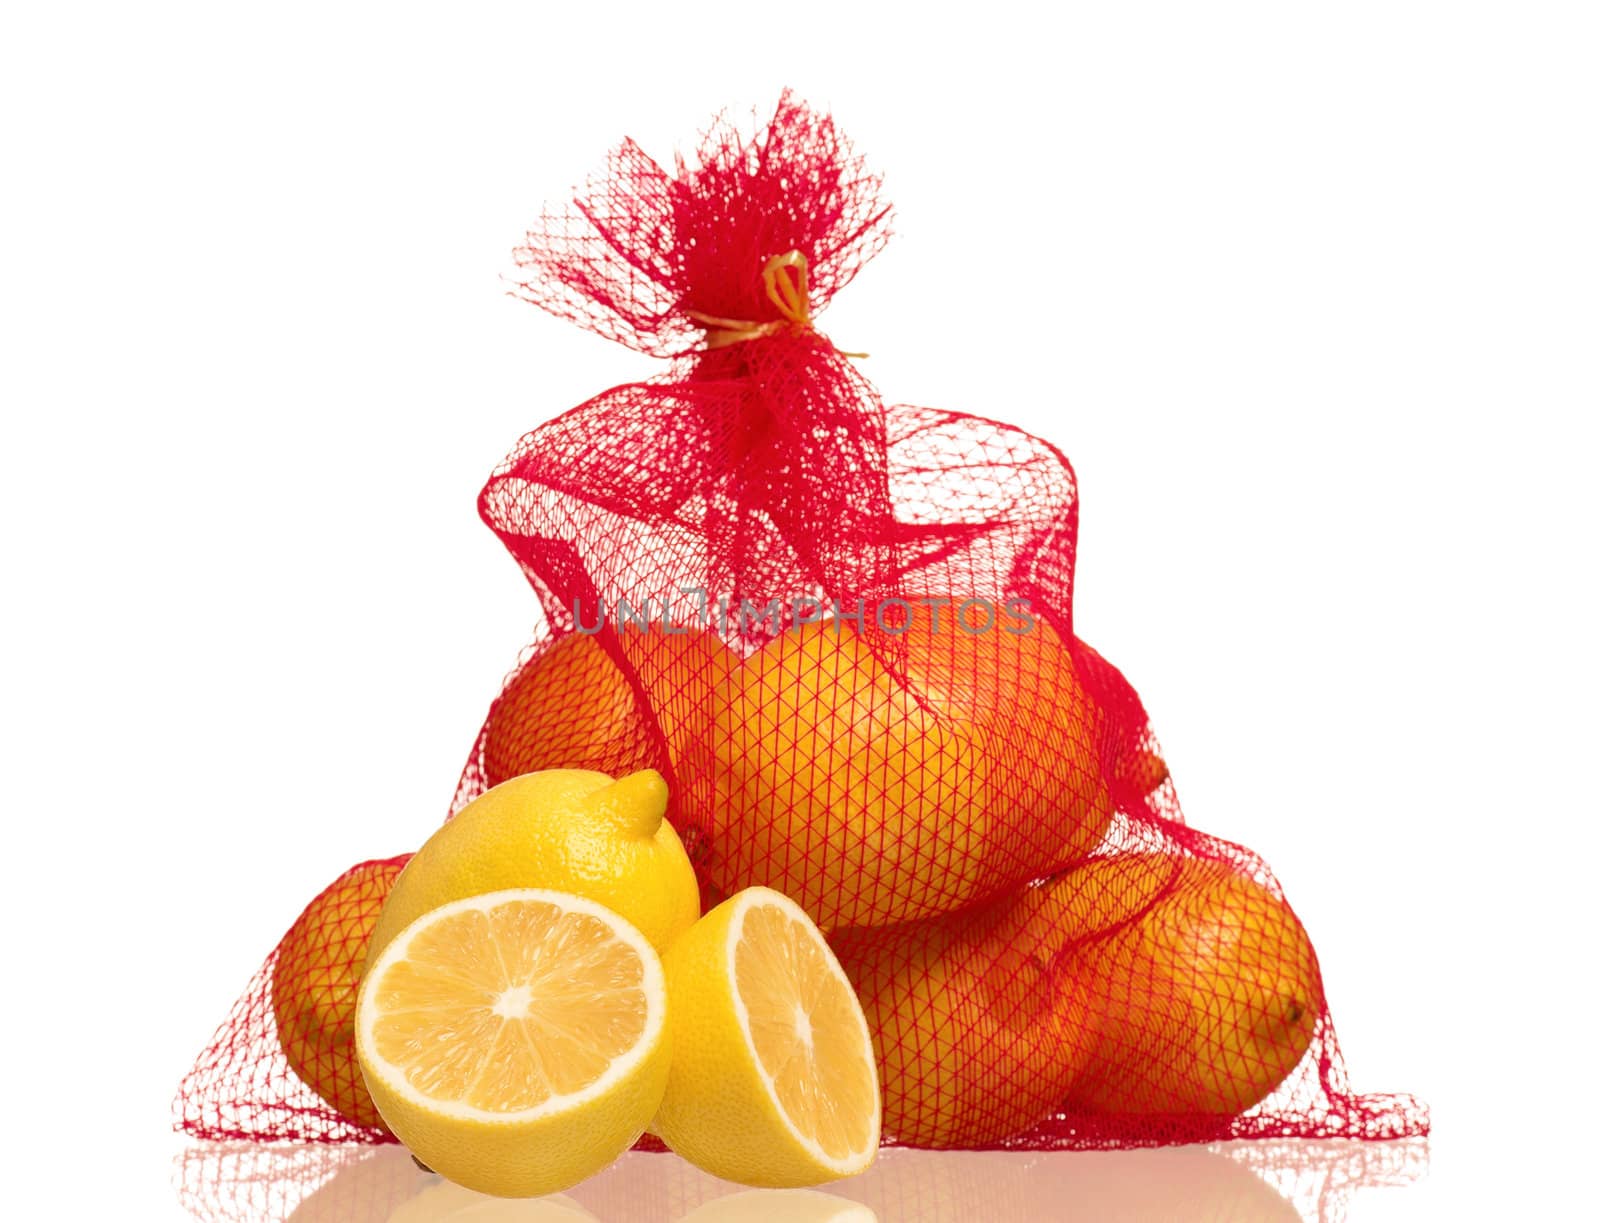 Lemons in net bag isolated on white background